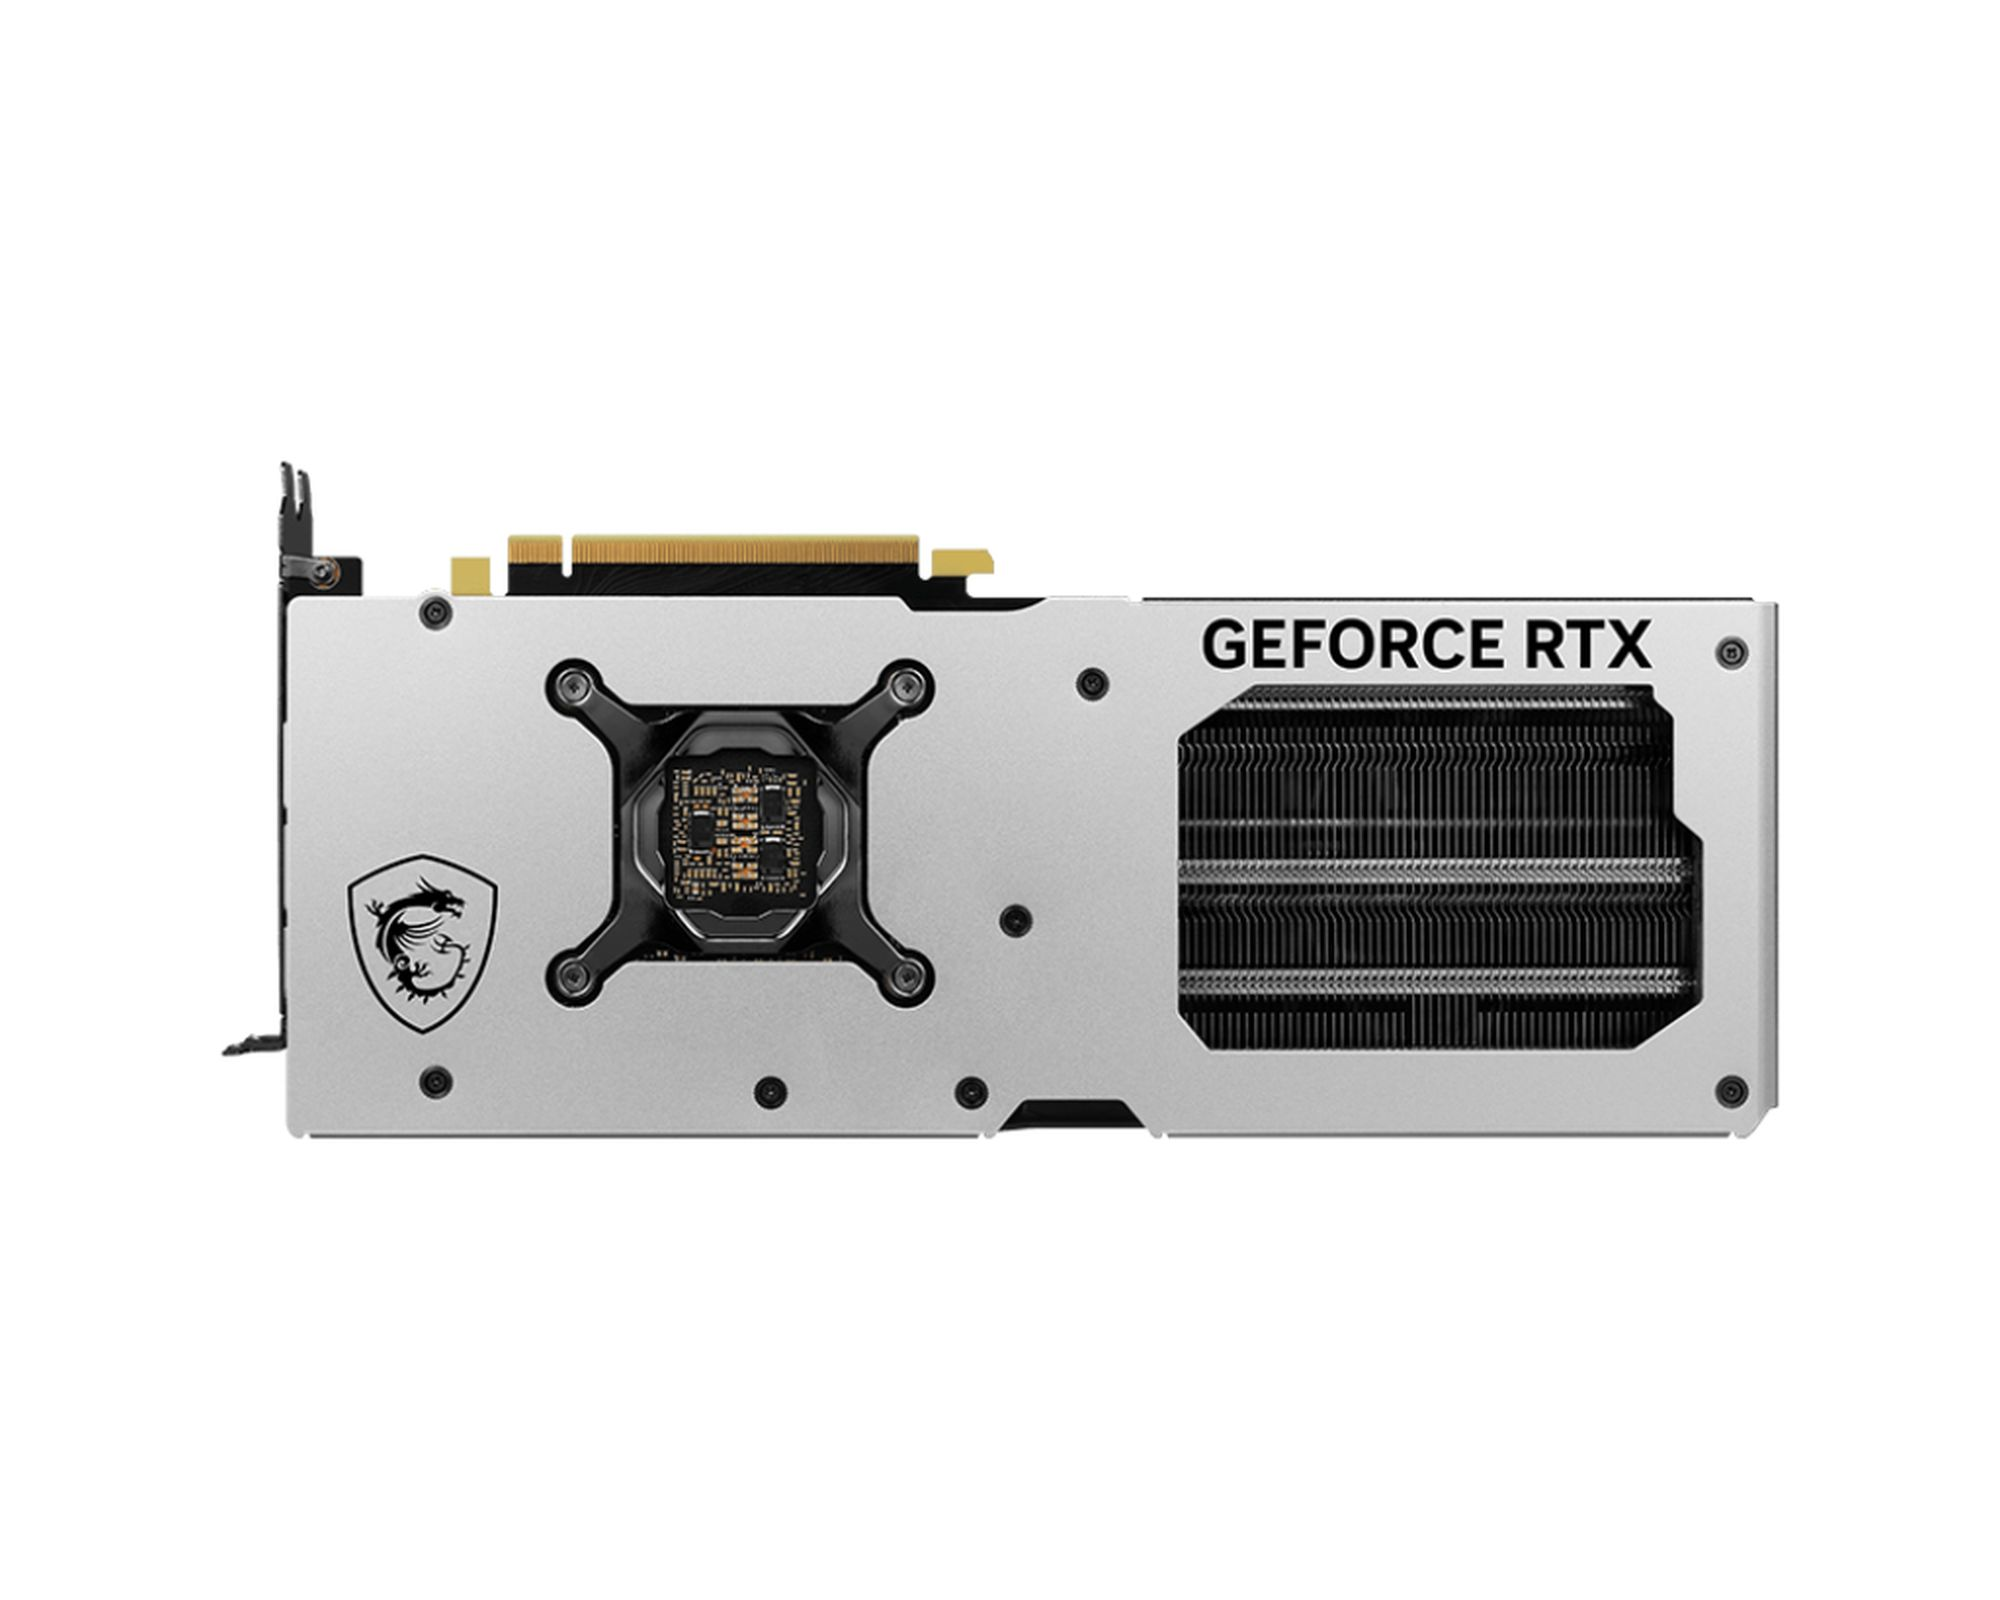 MSI GeForce RTX 4070 X 12G SLIM WHITE GAMING Ti Grafikkarte) (NVIDIA